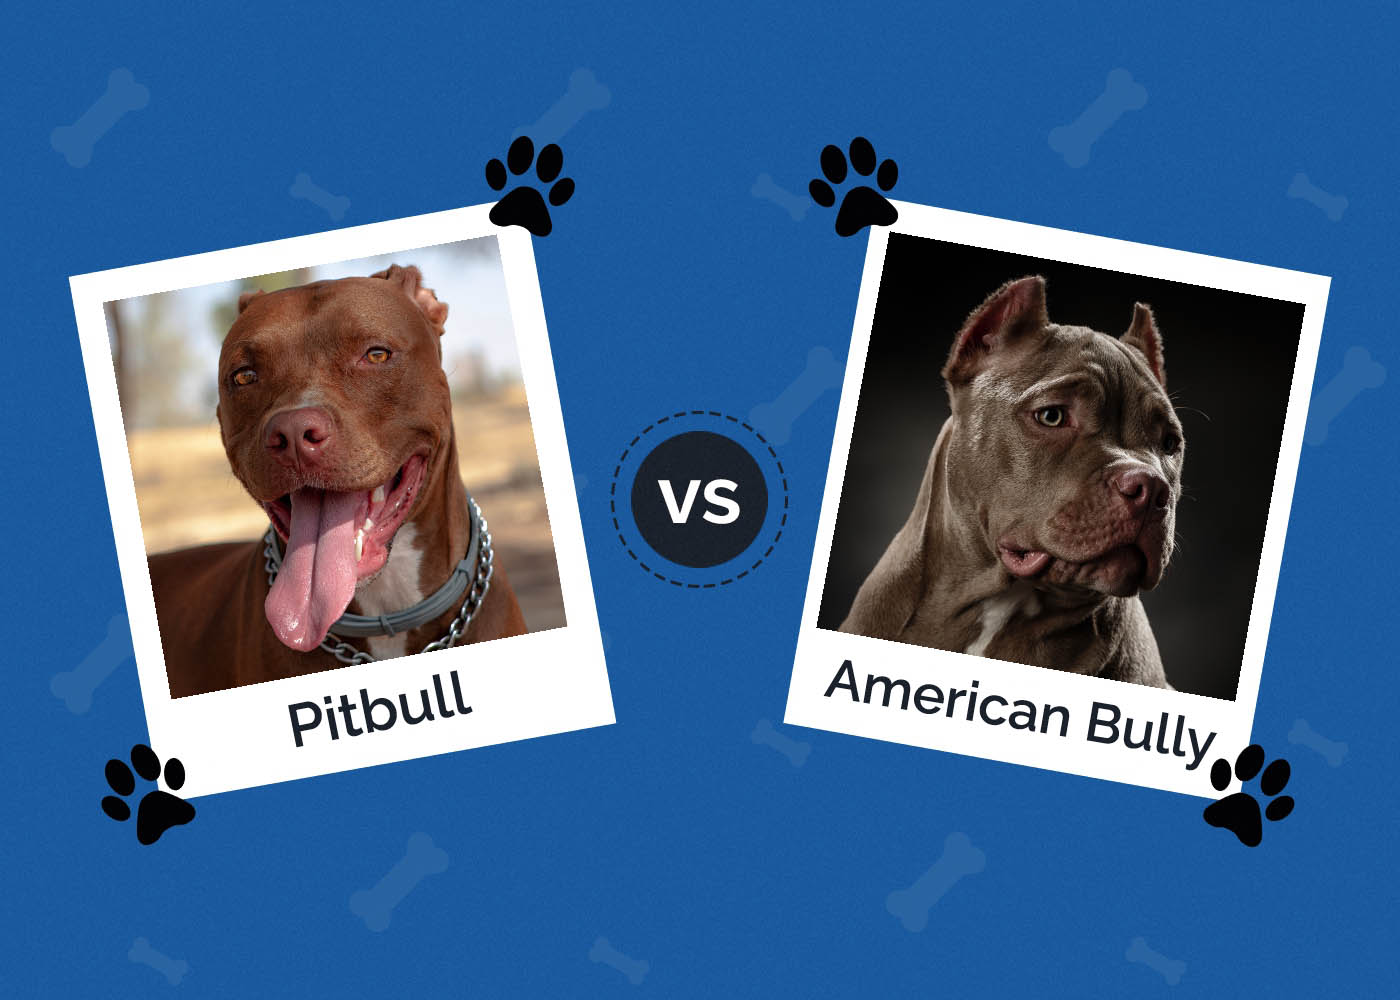 Pitbull vs American Bully